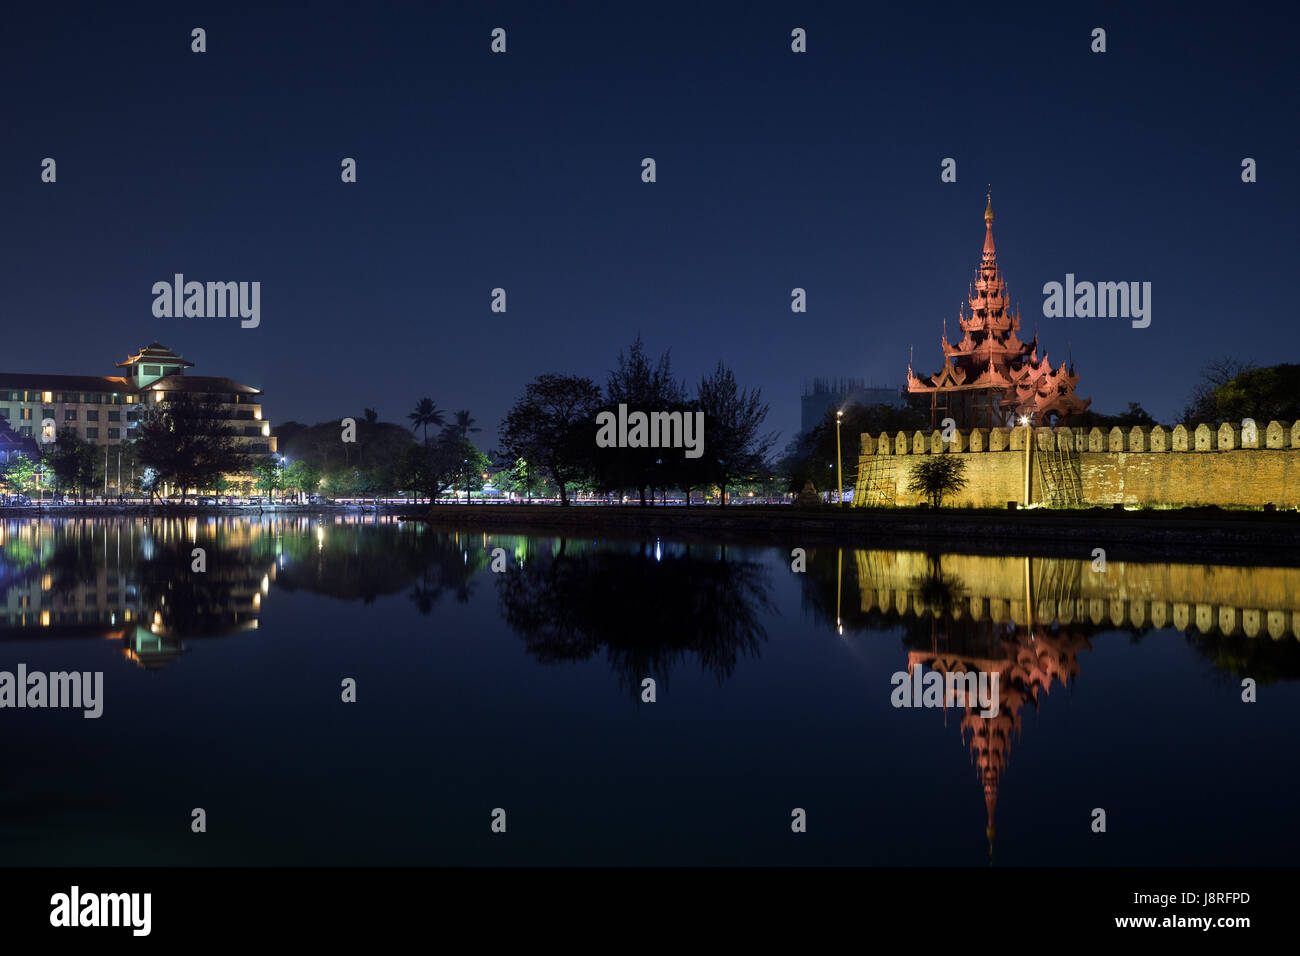 Città e cittadella di lit da parete, Bastione e pyatthat (spire) e fossato al royal Mandalay Palace a Mandalay, Myanmar (Birmania) a notte. Copia dello spazio. Foto Stock